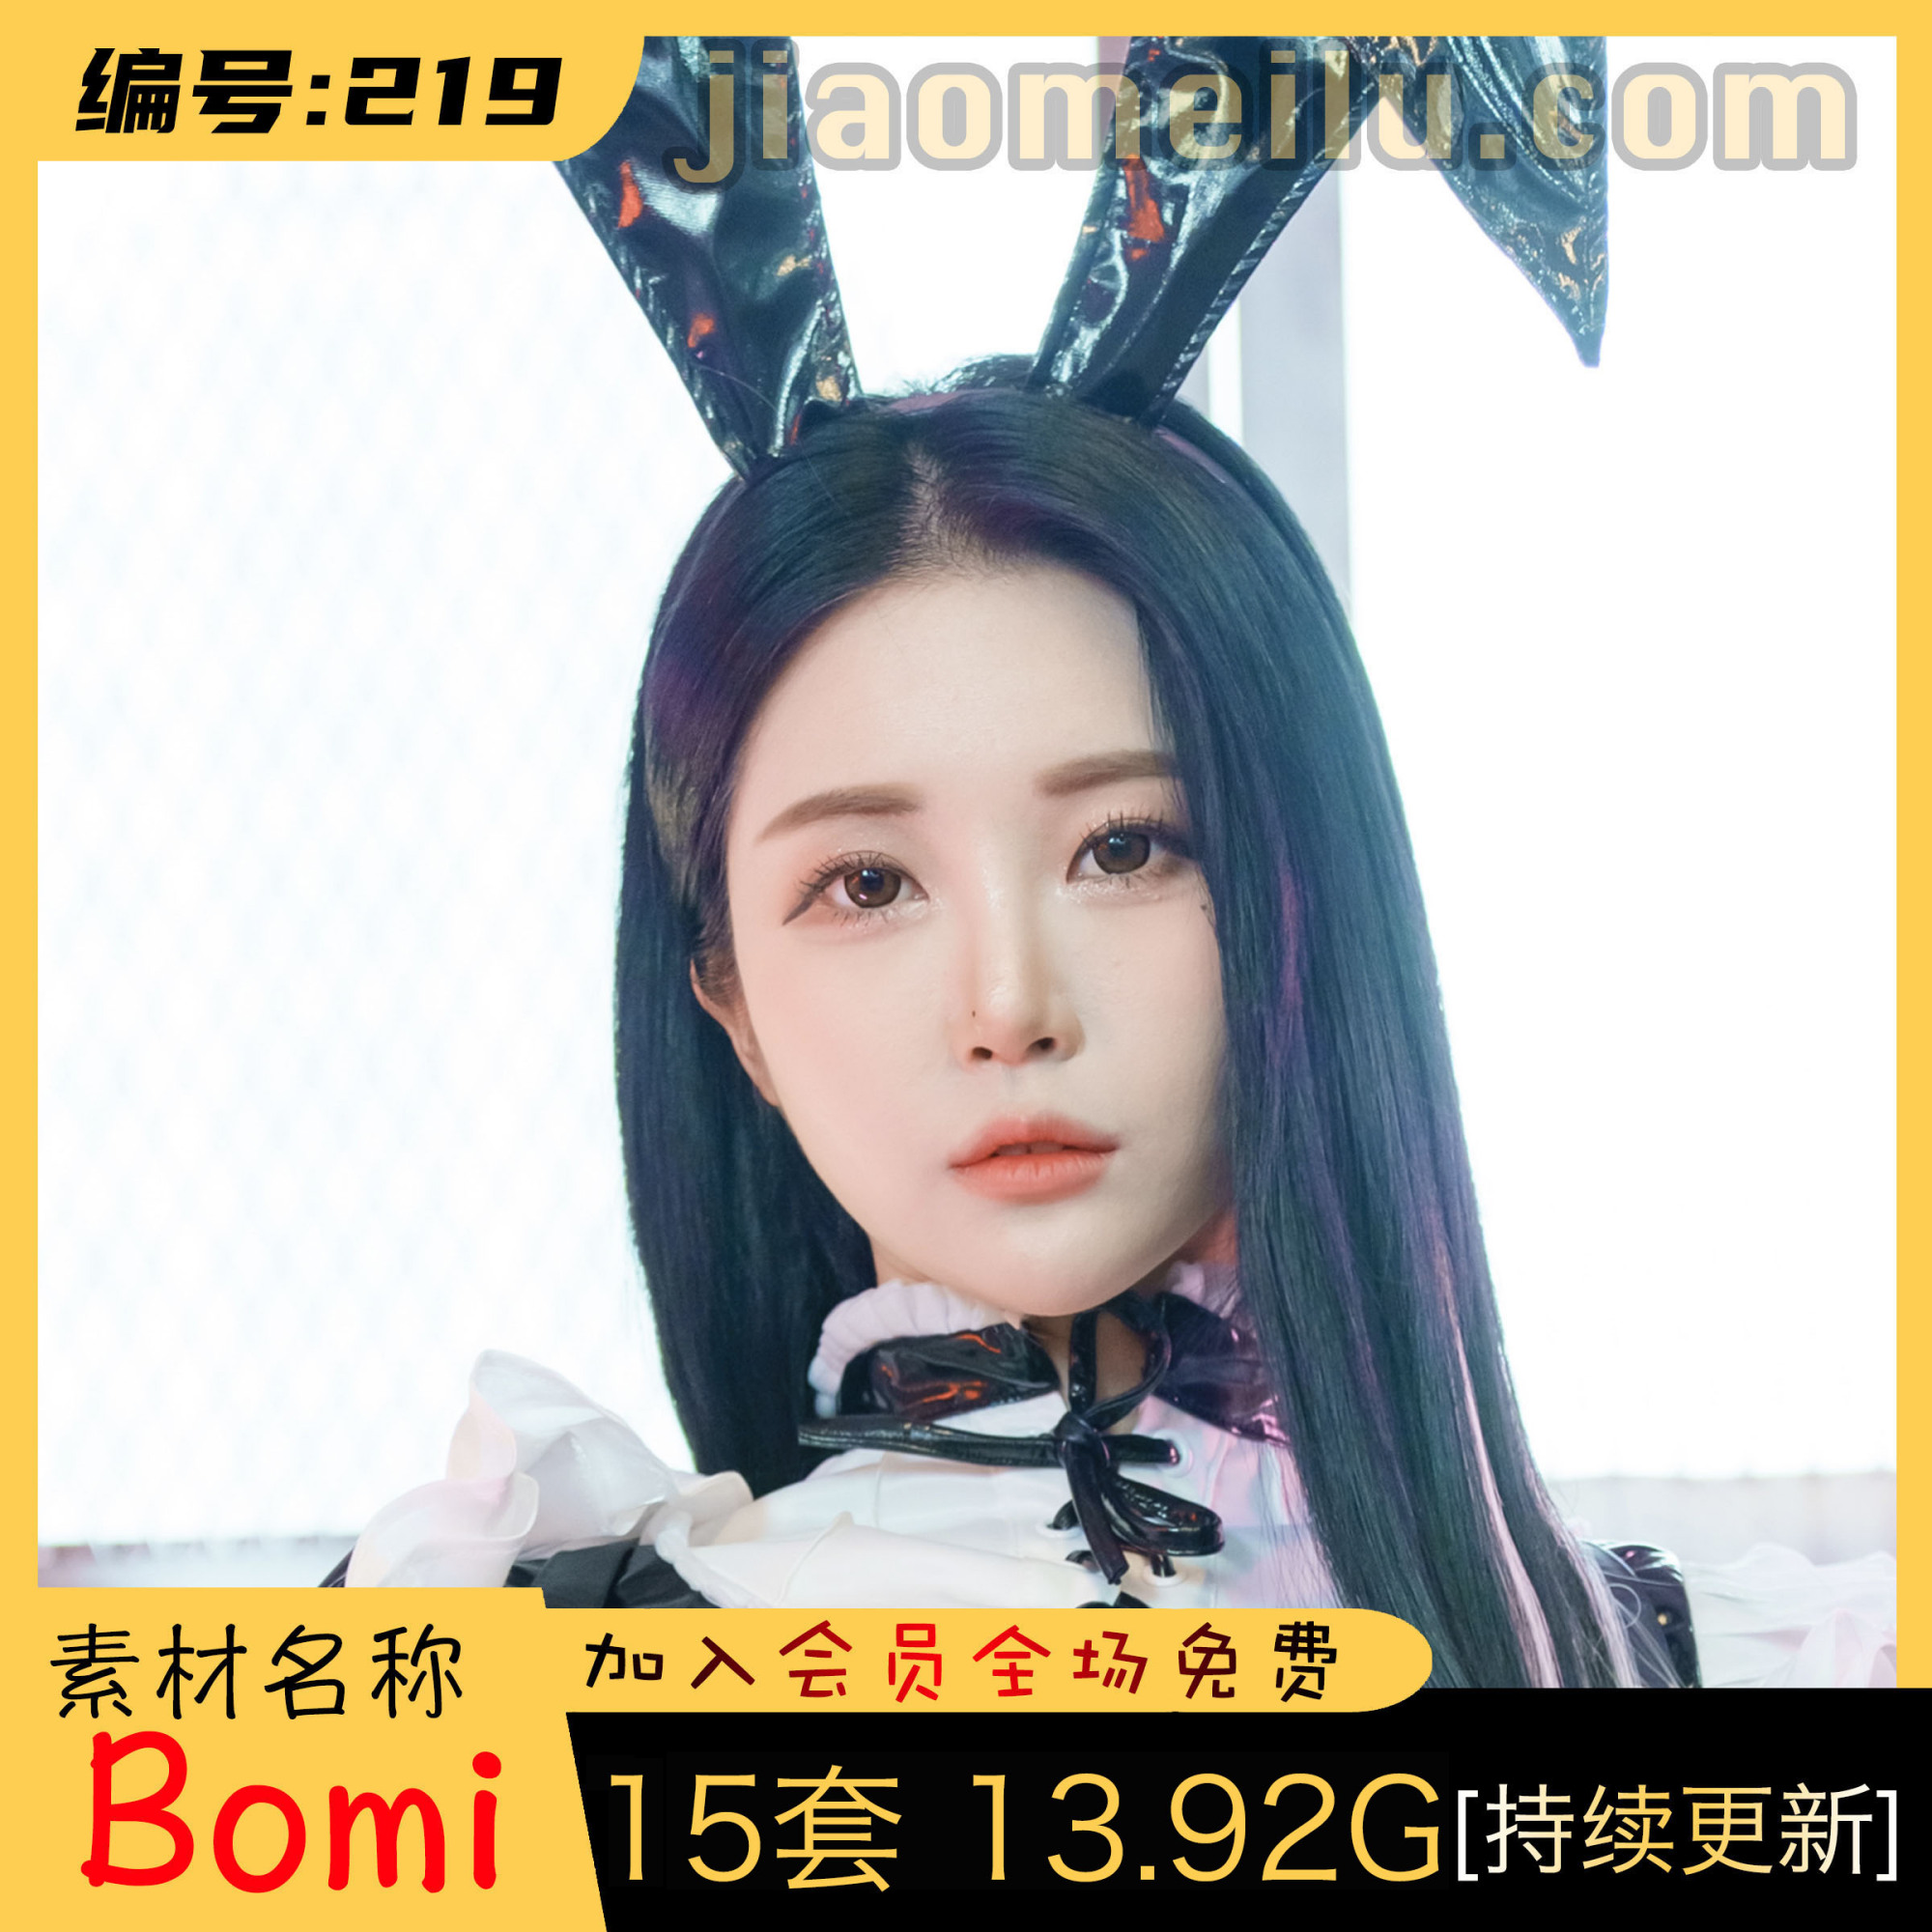 韩国妹子:Bomi (보미) 最全图包合集 [15套][持续更新]